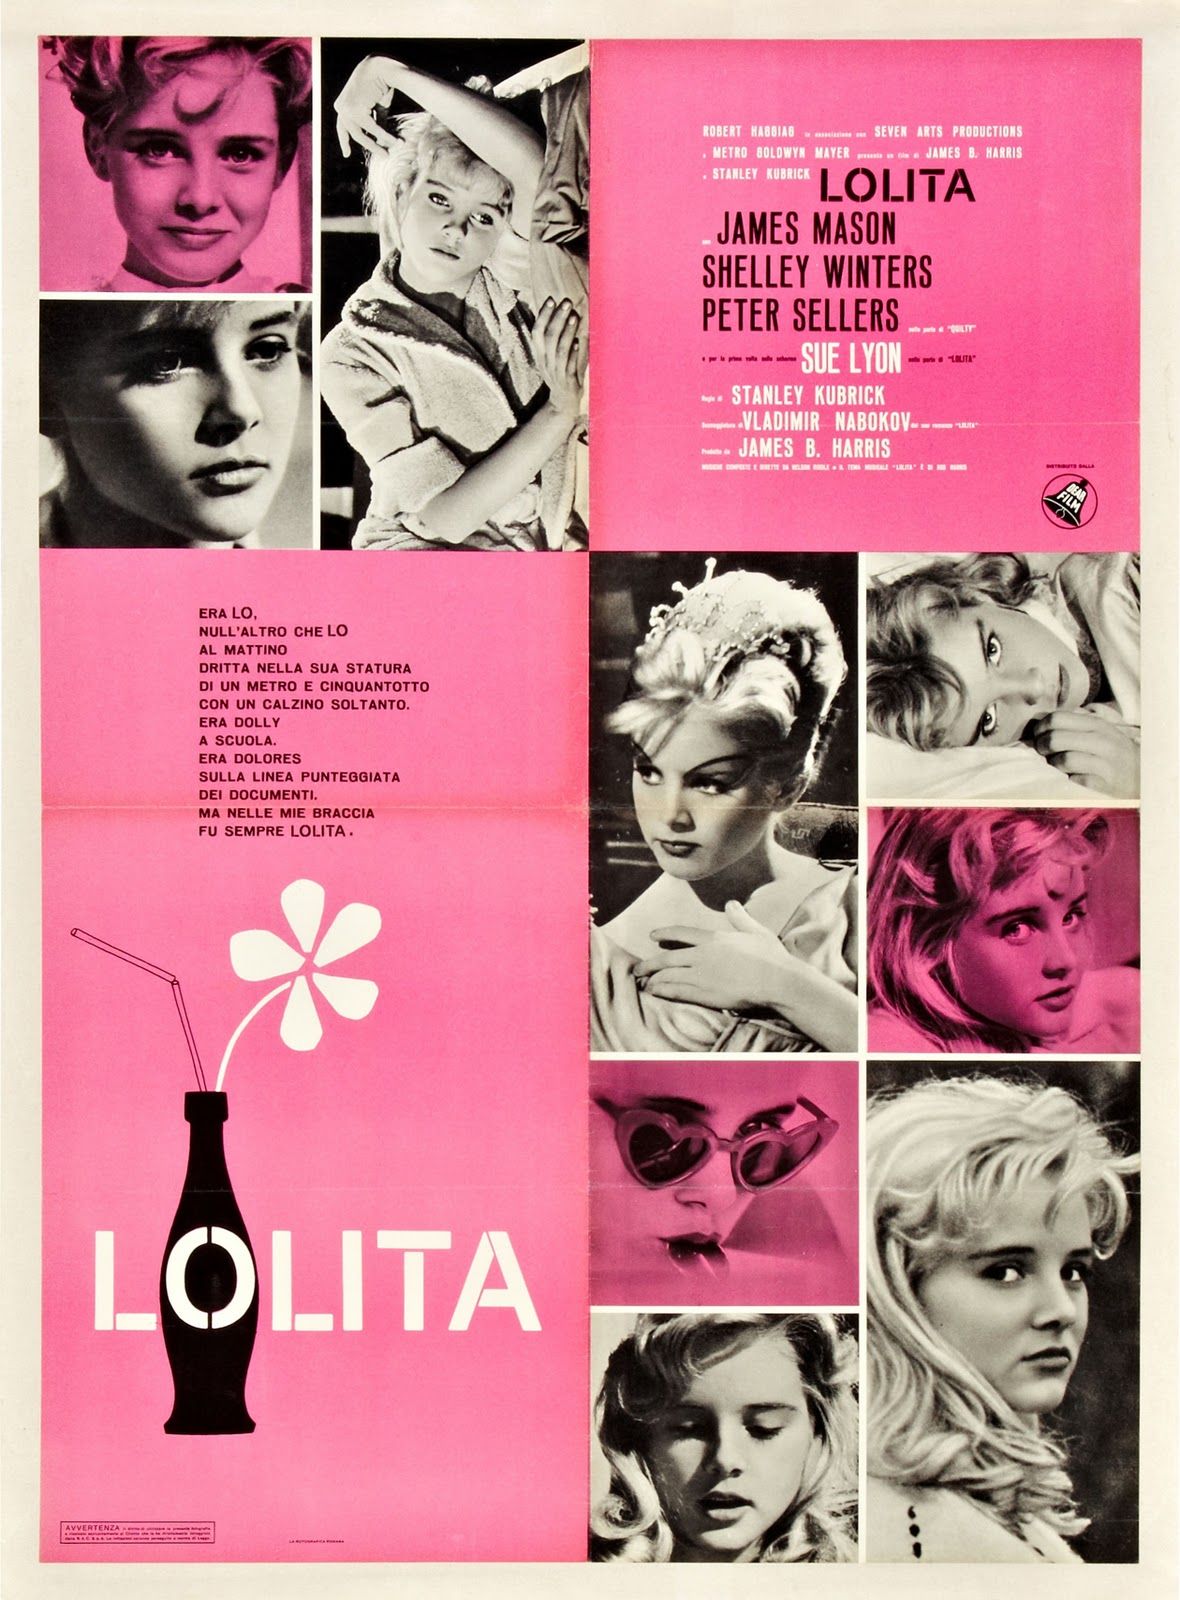 یادداشتی بر لولیتا 1962؛ استنلی کوبریک 1